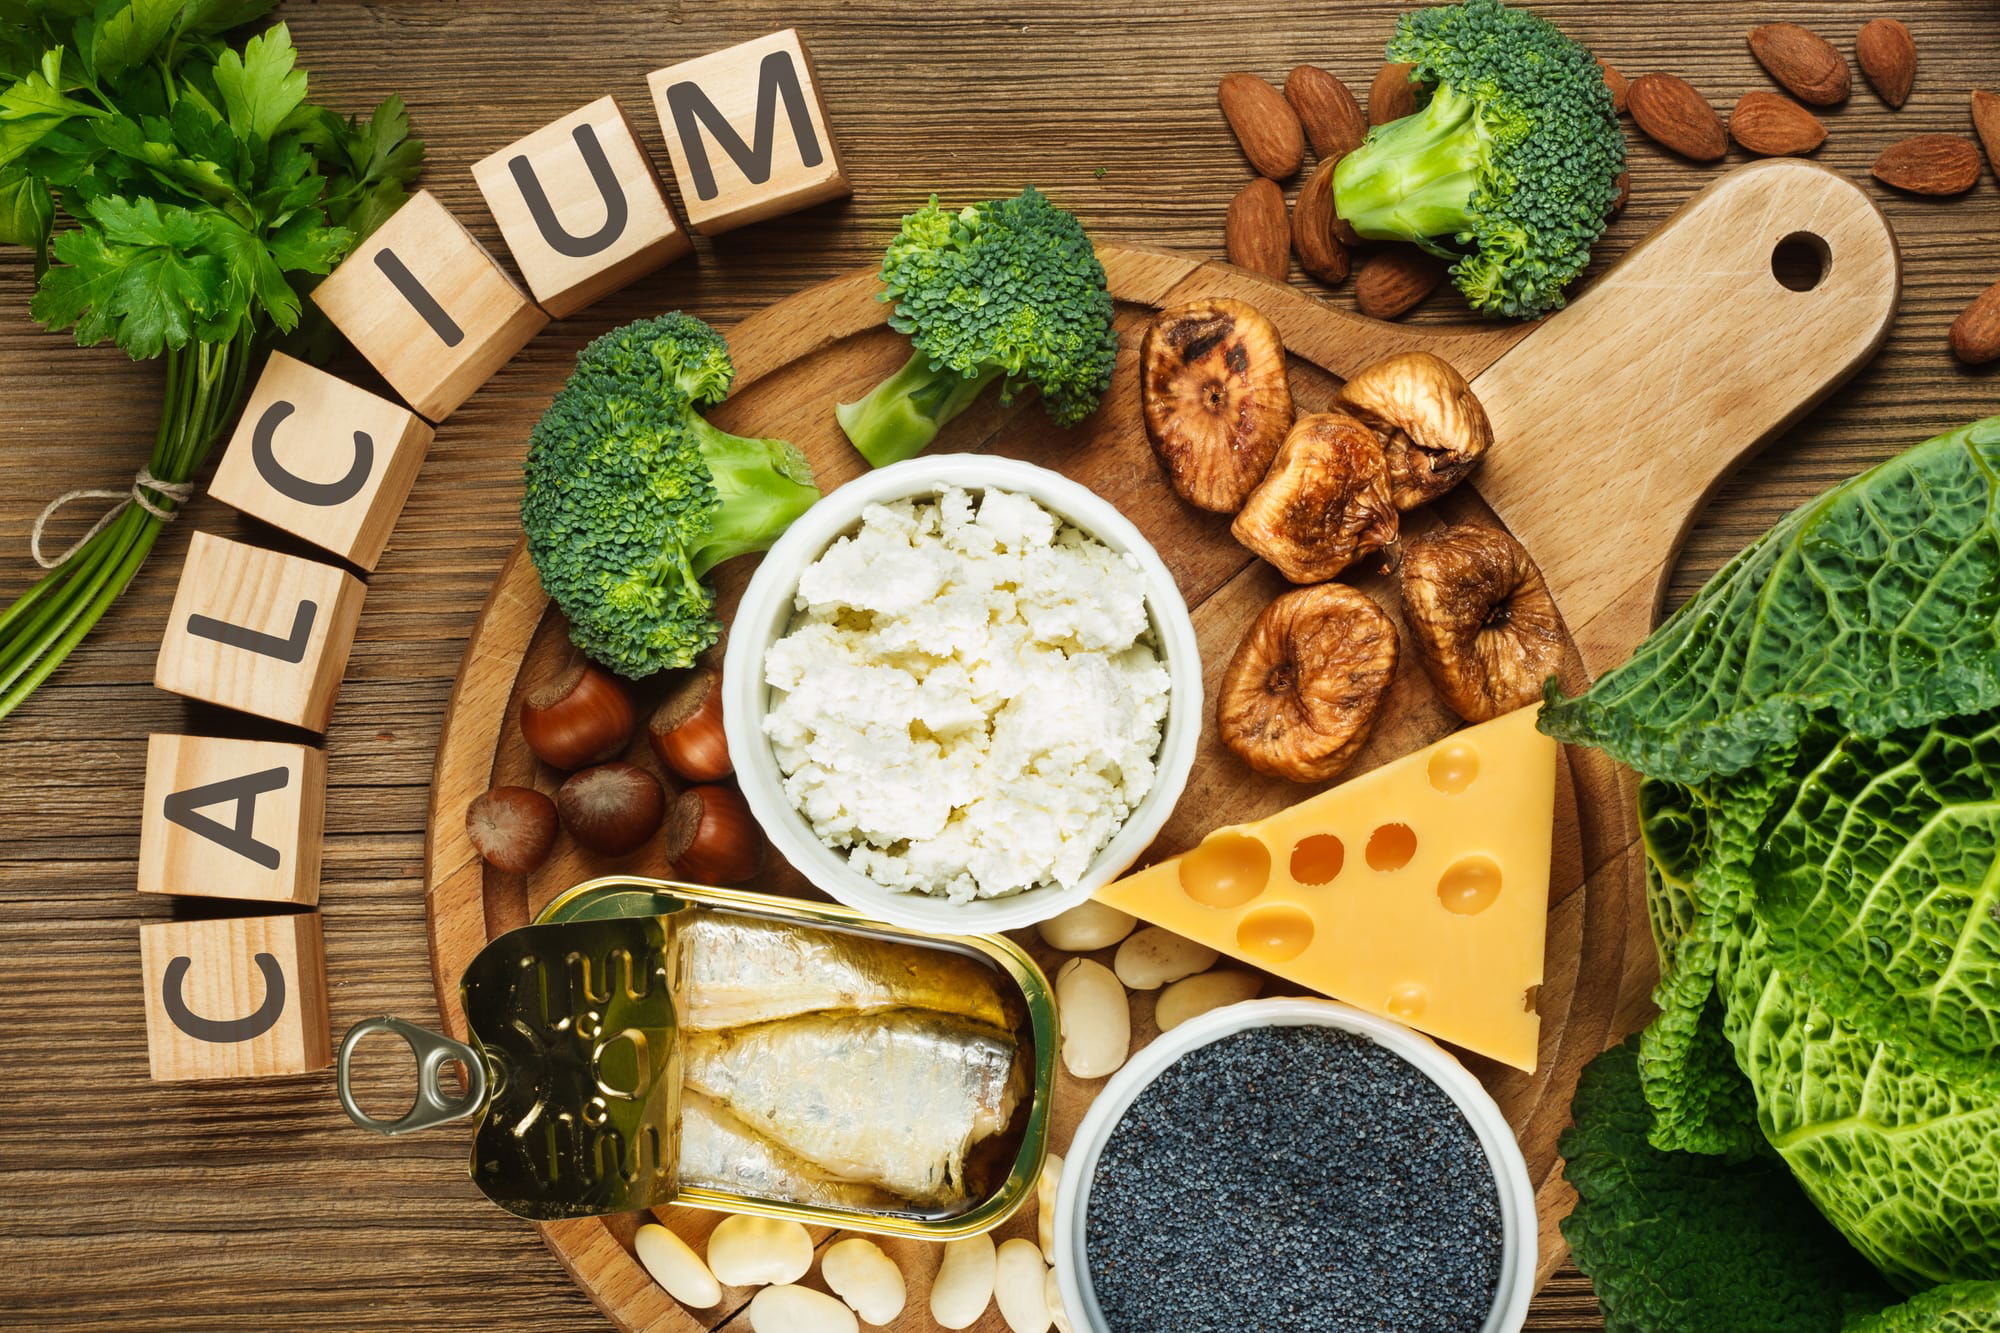 5 مصادر غذائية من الكالسيوم يجب تناولها باعتدال.. منها الجبن والمكسرات